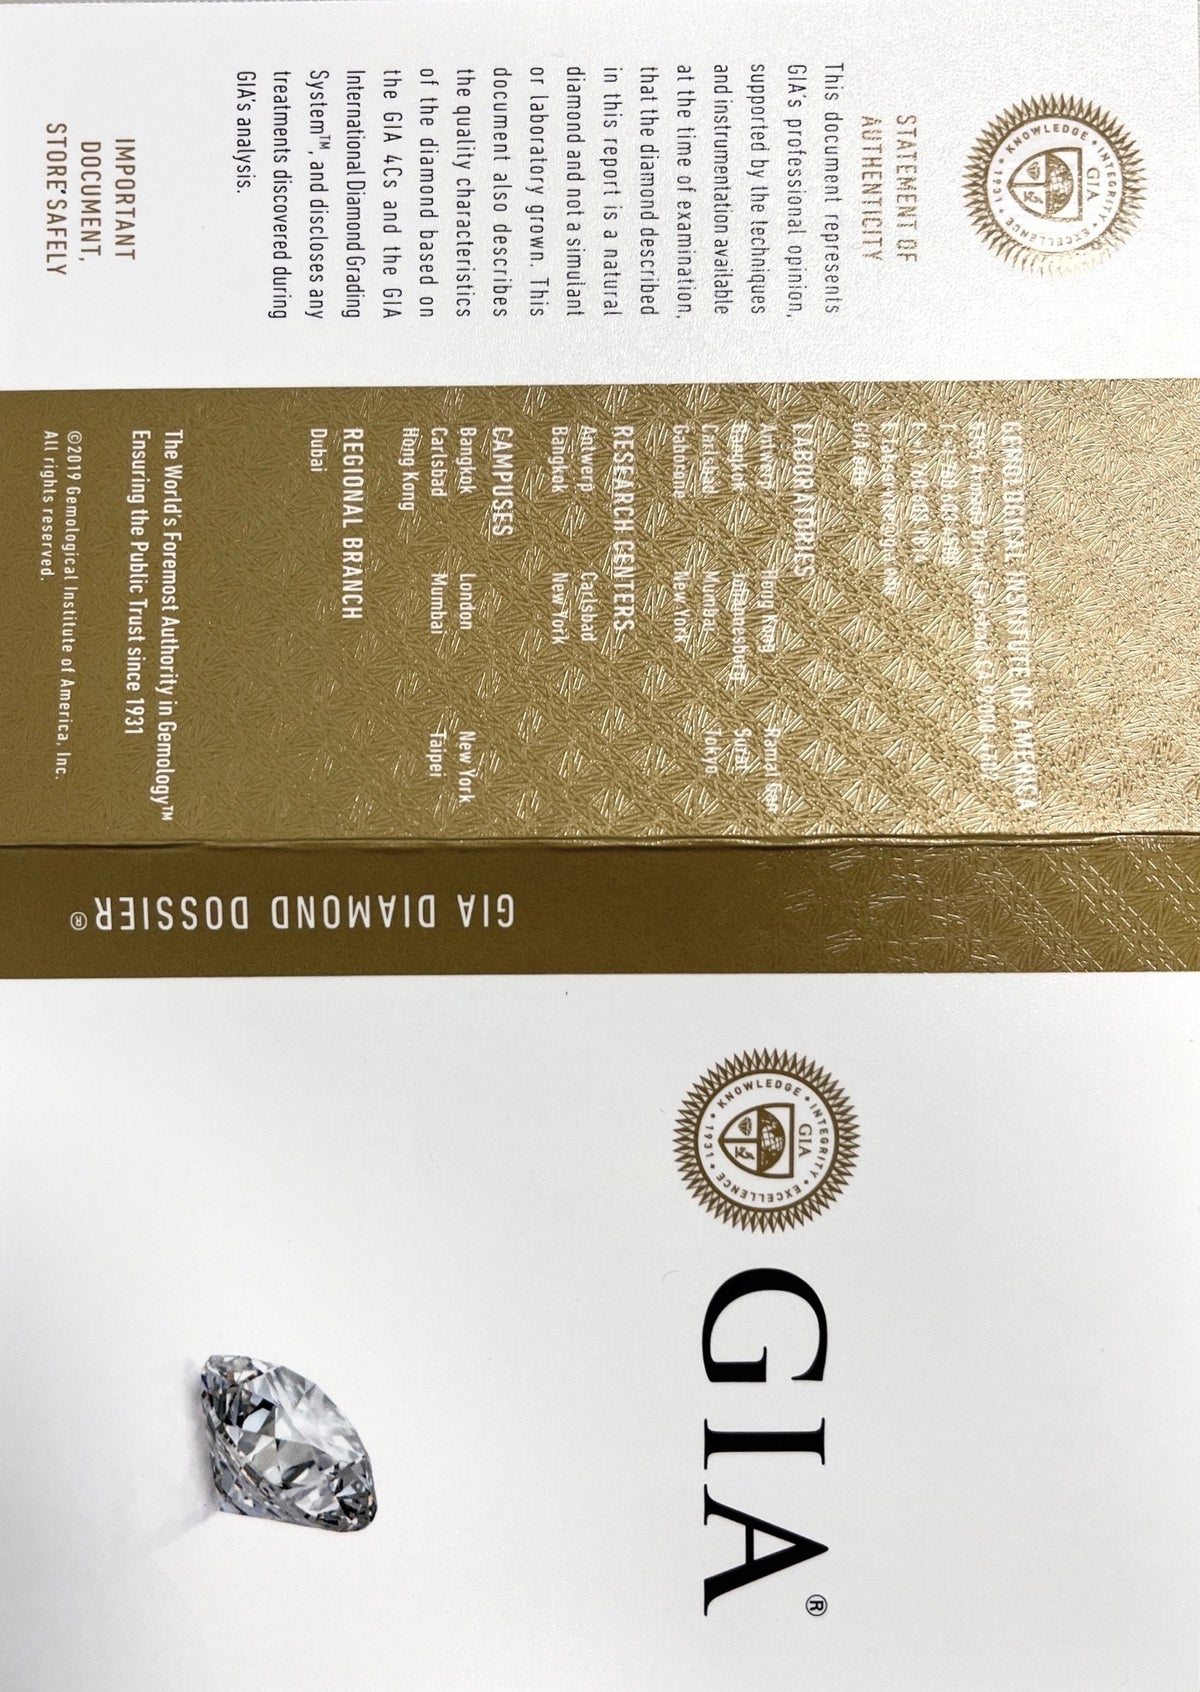 Solitär Ring Weißgold 585 - 14 ct. mit Brillant 0,35 ct. und GIA Zertifikat